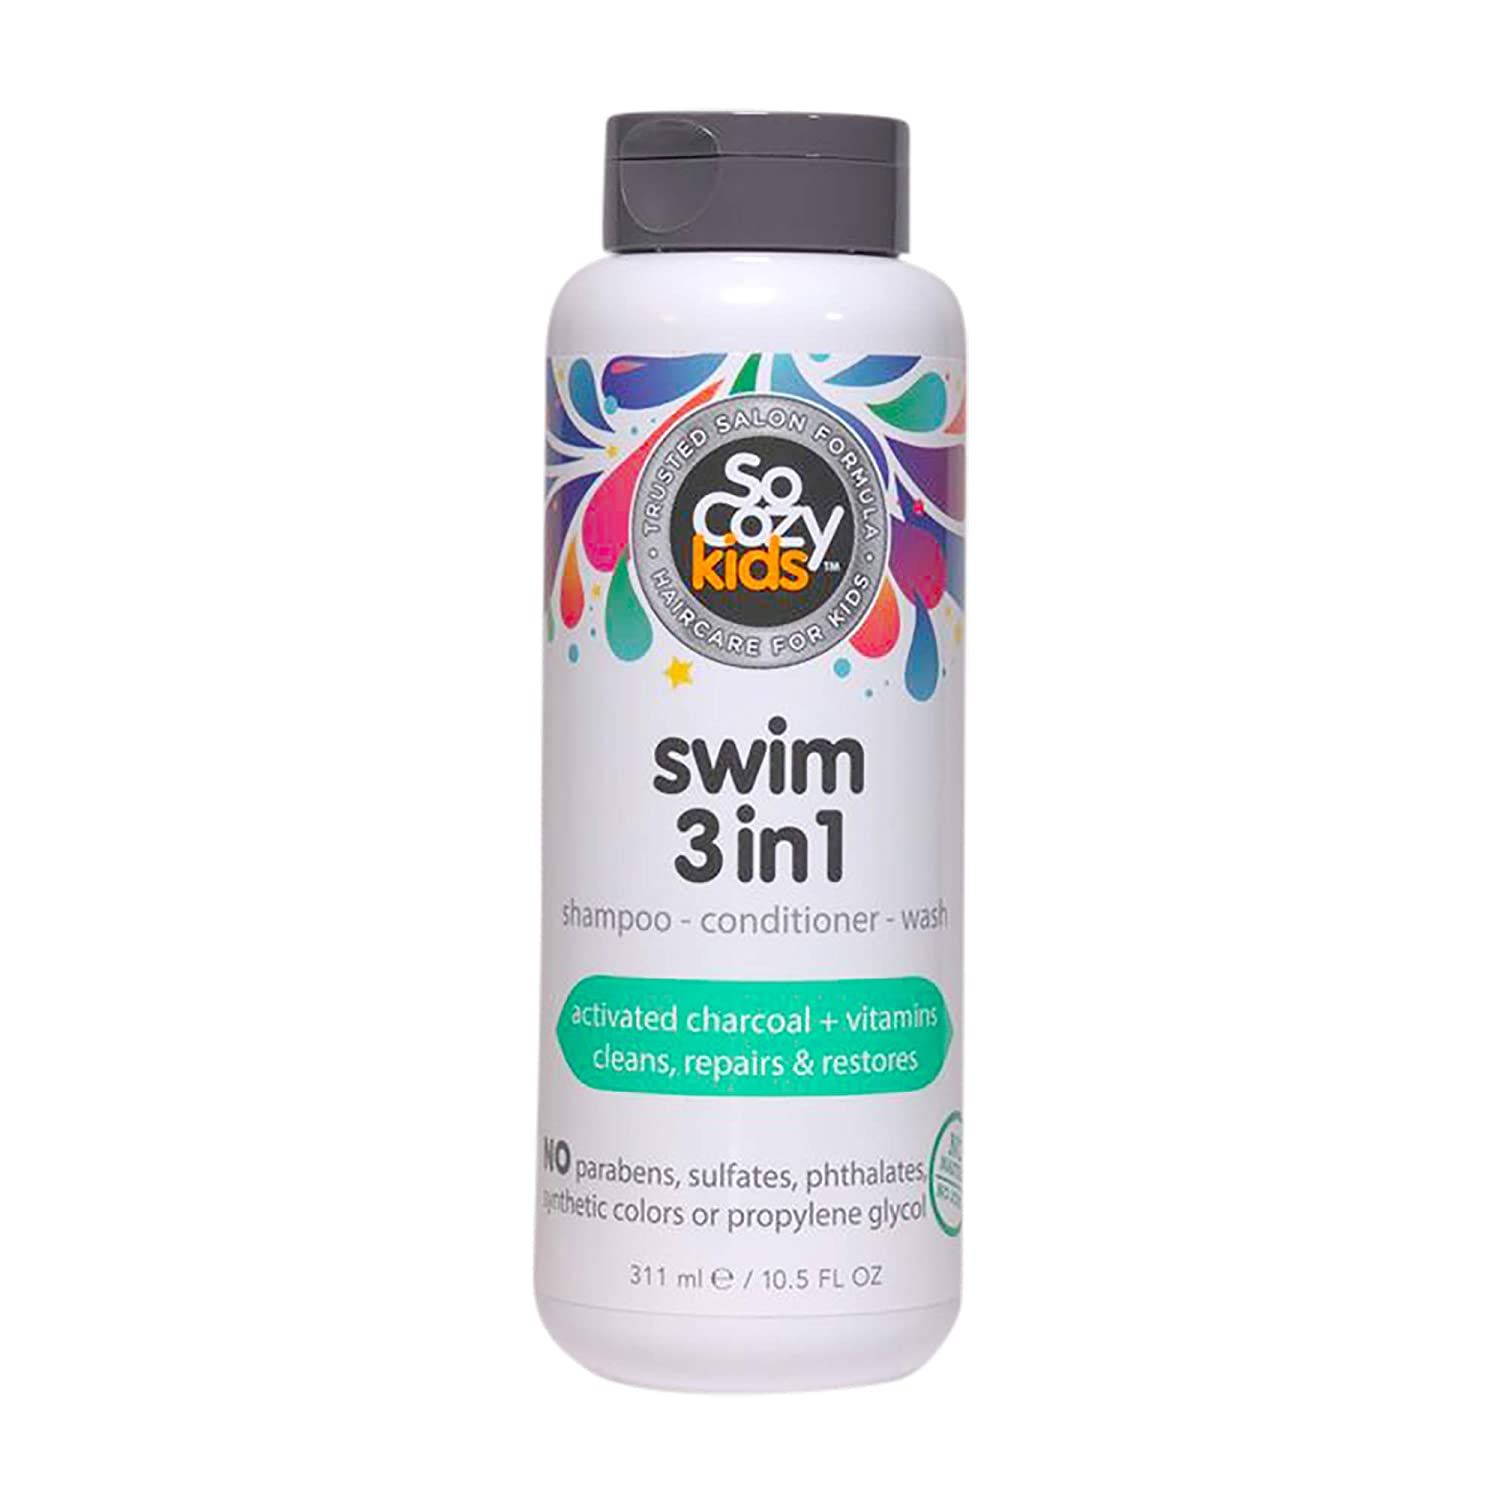 SoCozy Kids Swim 3-in-1 Shampoo, Conditioner & Body Wash - 3-in-1 Combo Pool Shampoo & Conditione... | Amazon (US)